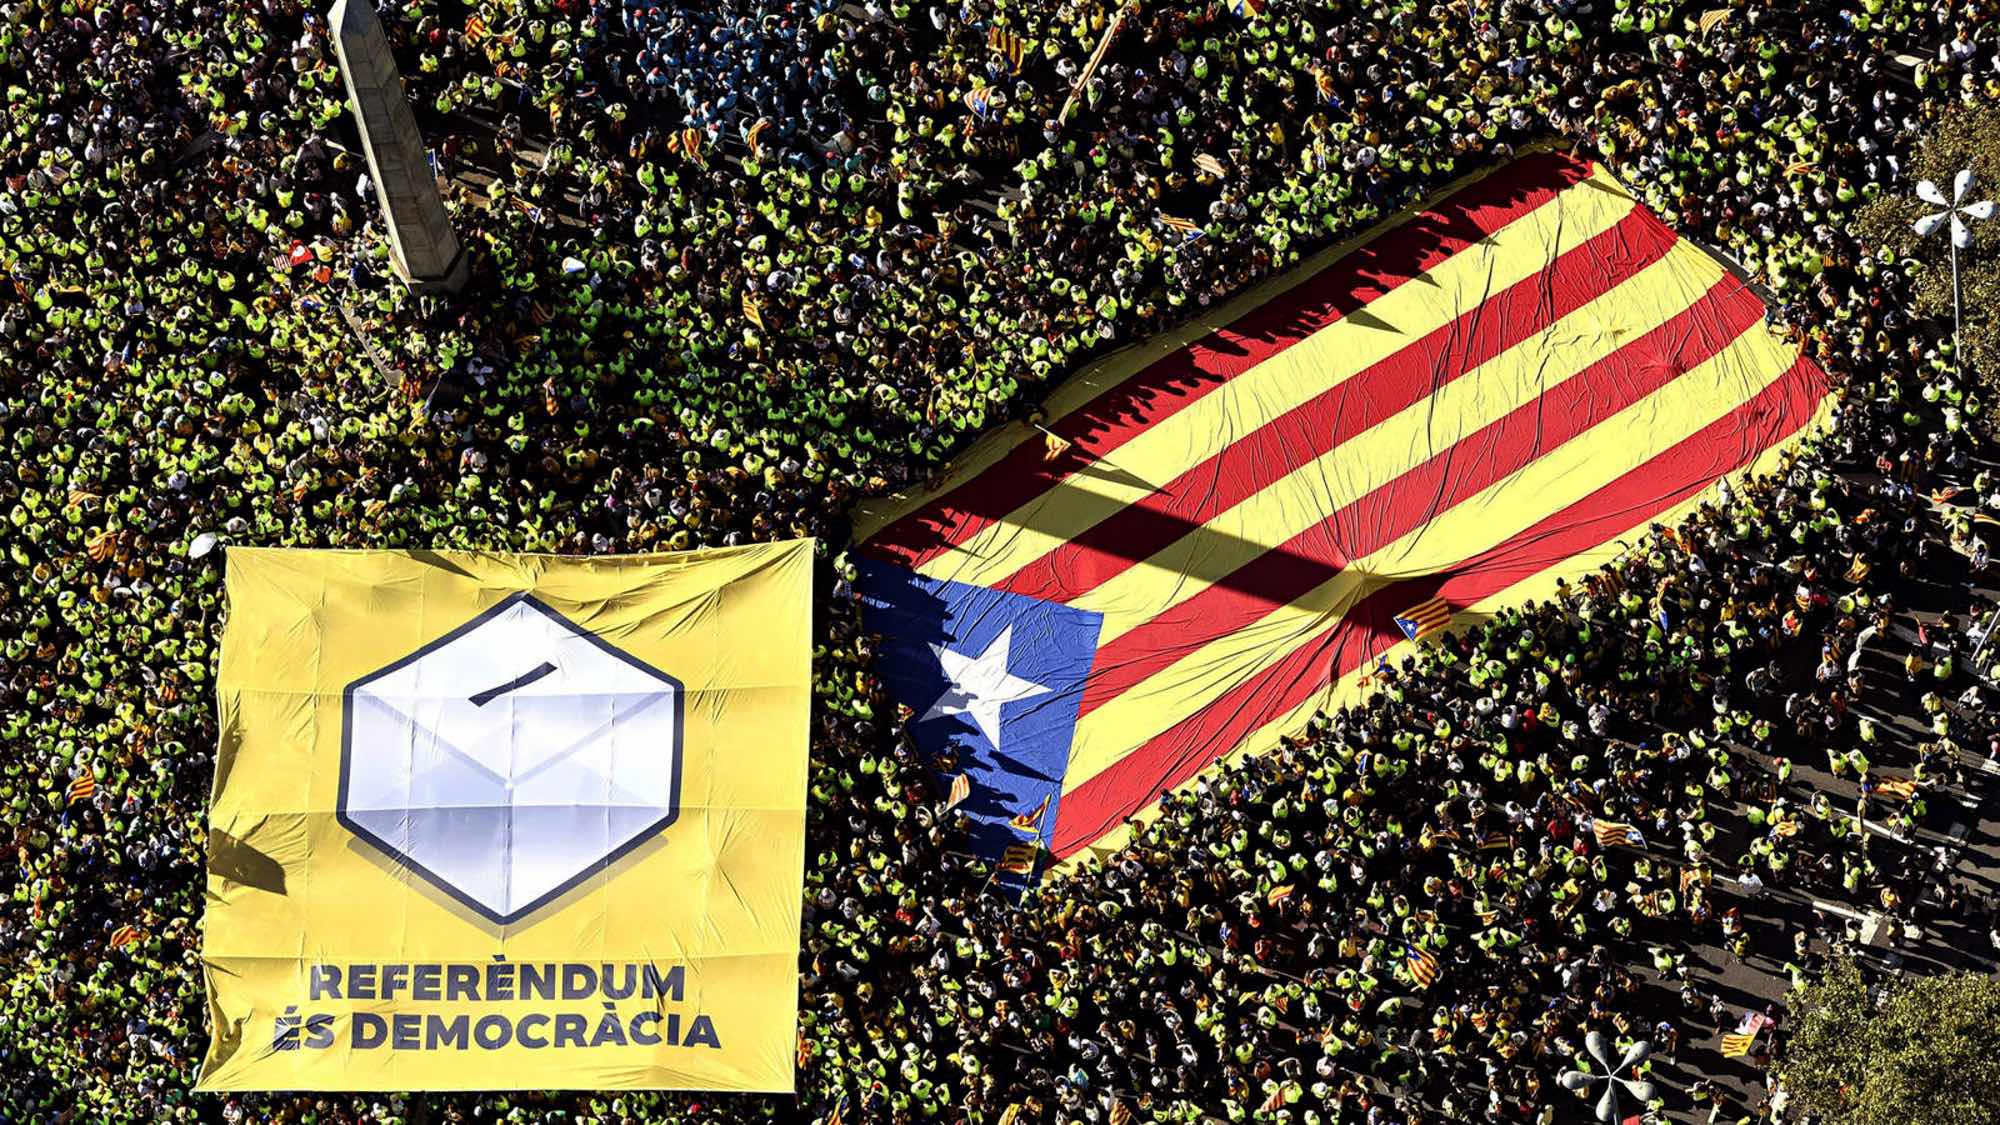 Catalunya: Facing Two Bad Options, Choose the Third